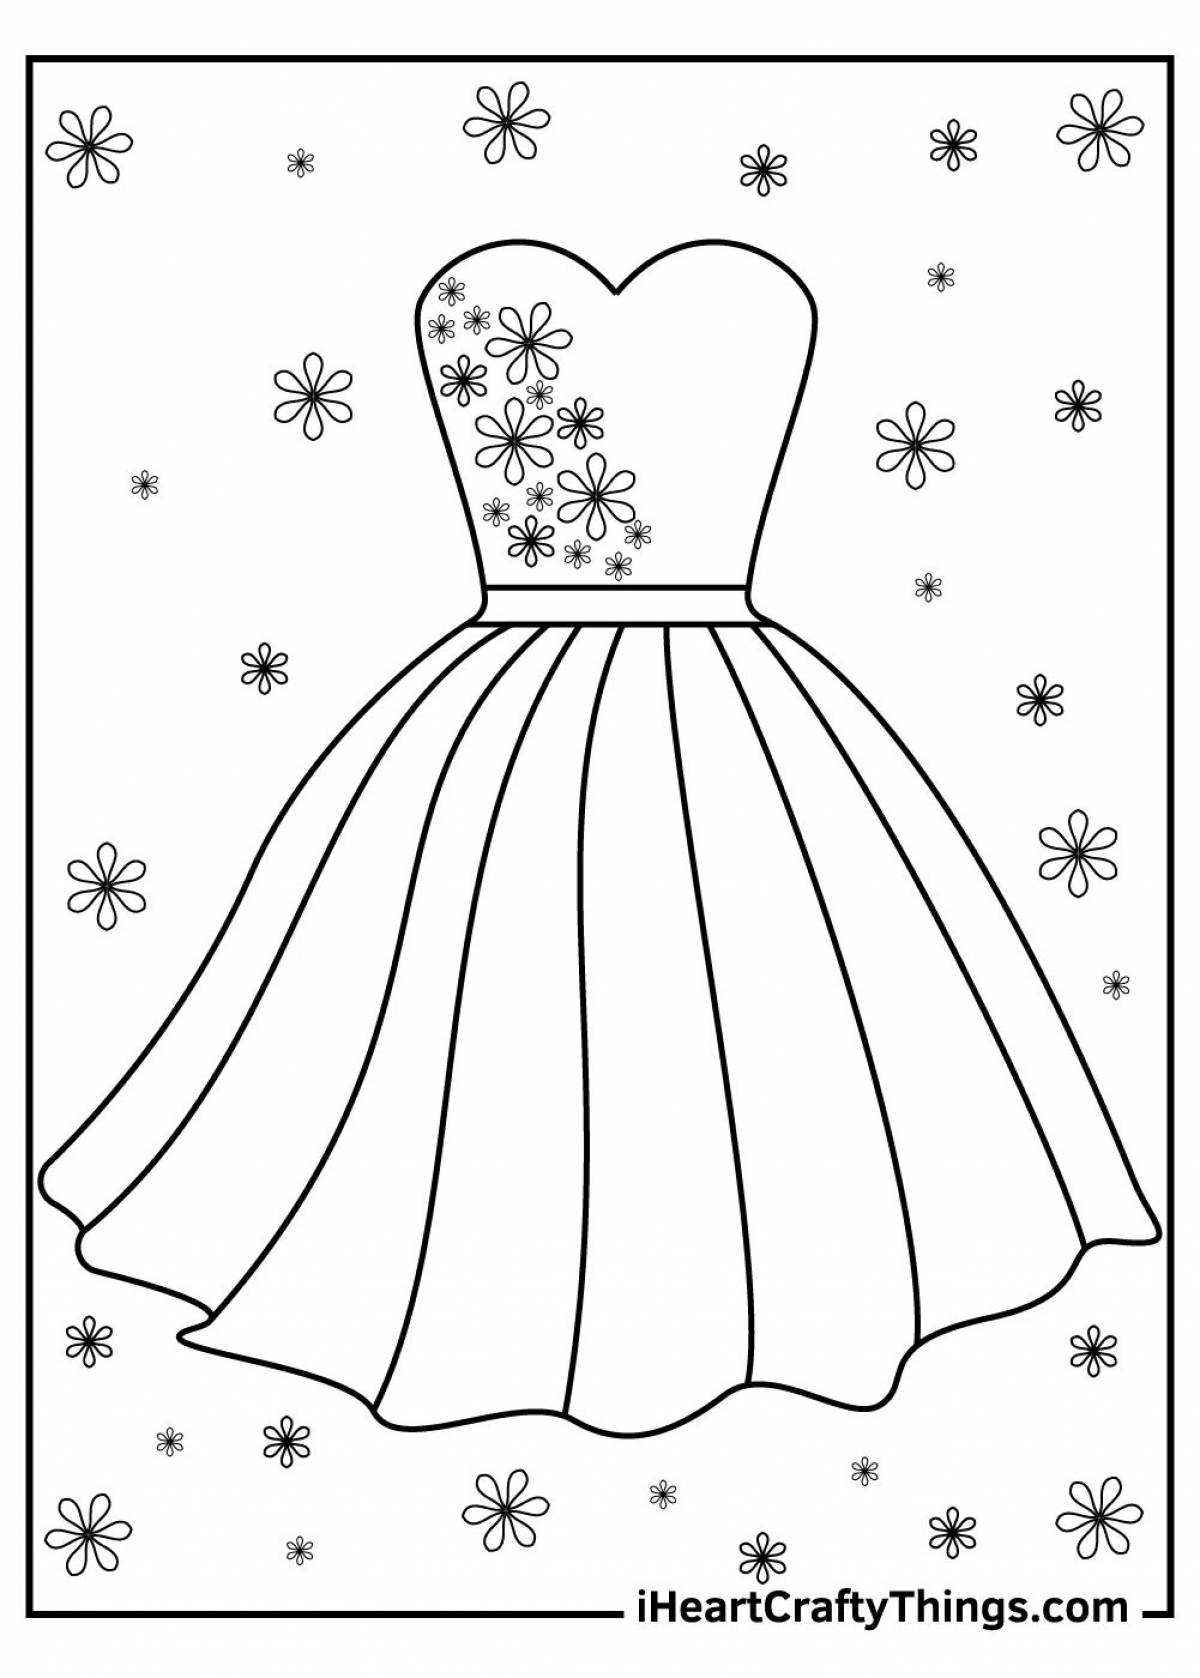 Раскраска очаровательное платье для детей 5-6 лет